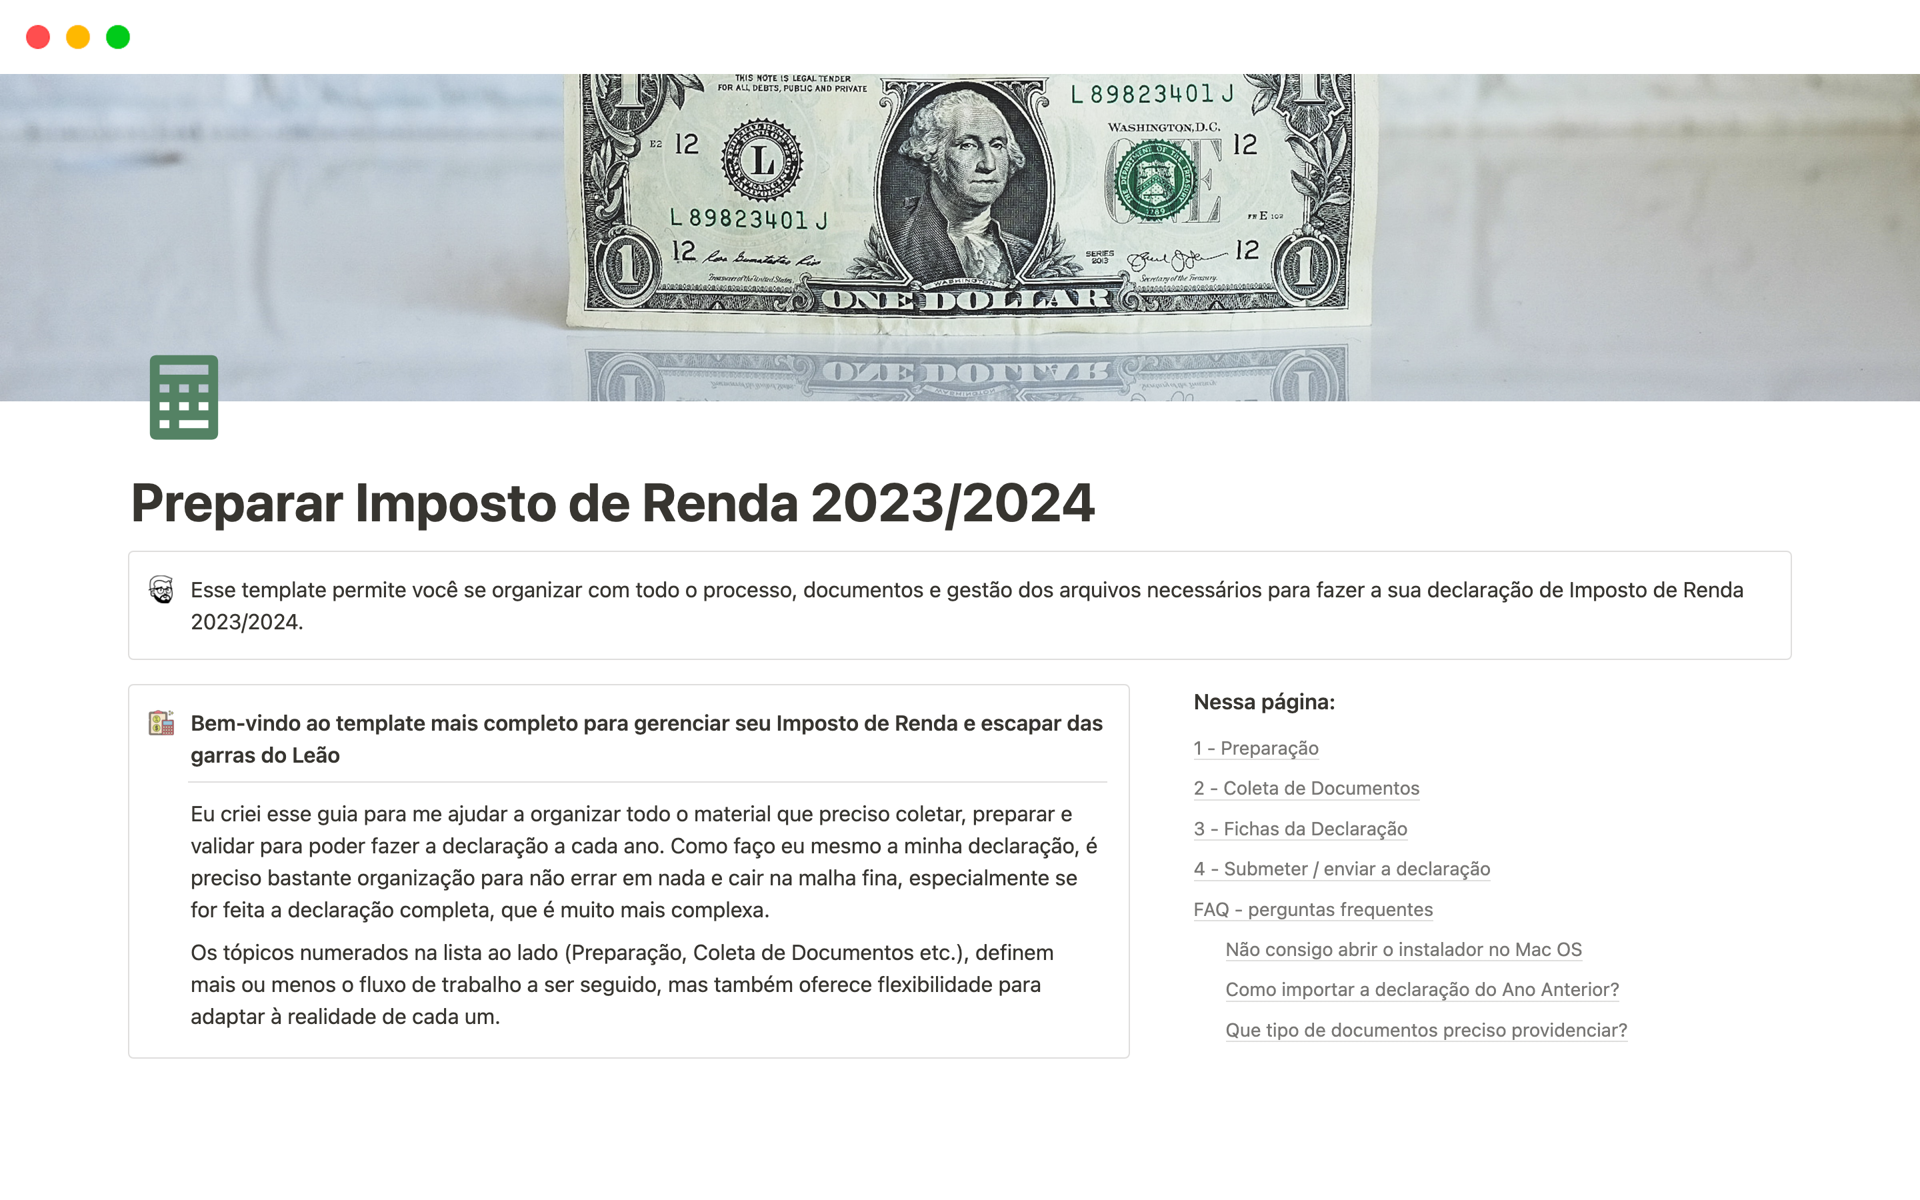 A template preview for Preparar Imposto de Renda 2023/2024